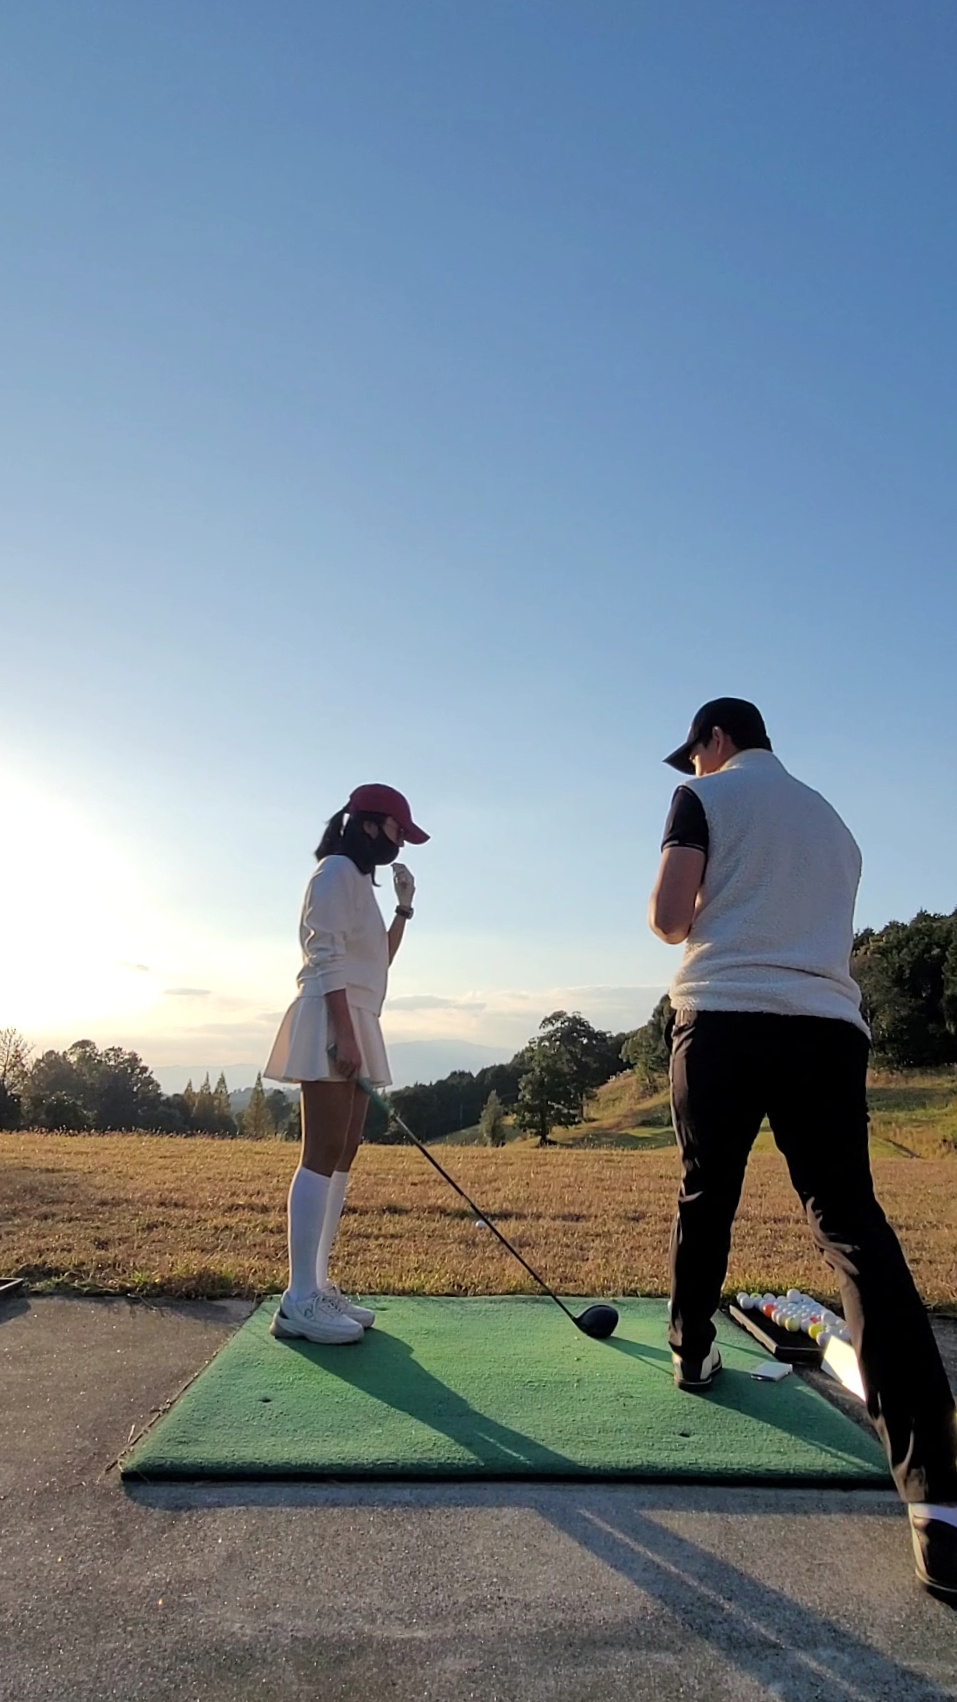 GDR캠프 가고시마 골프 레슨 골프전지훈련 일본골프여행